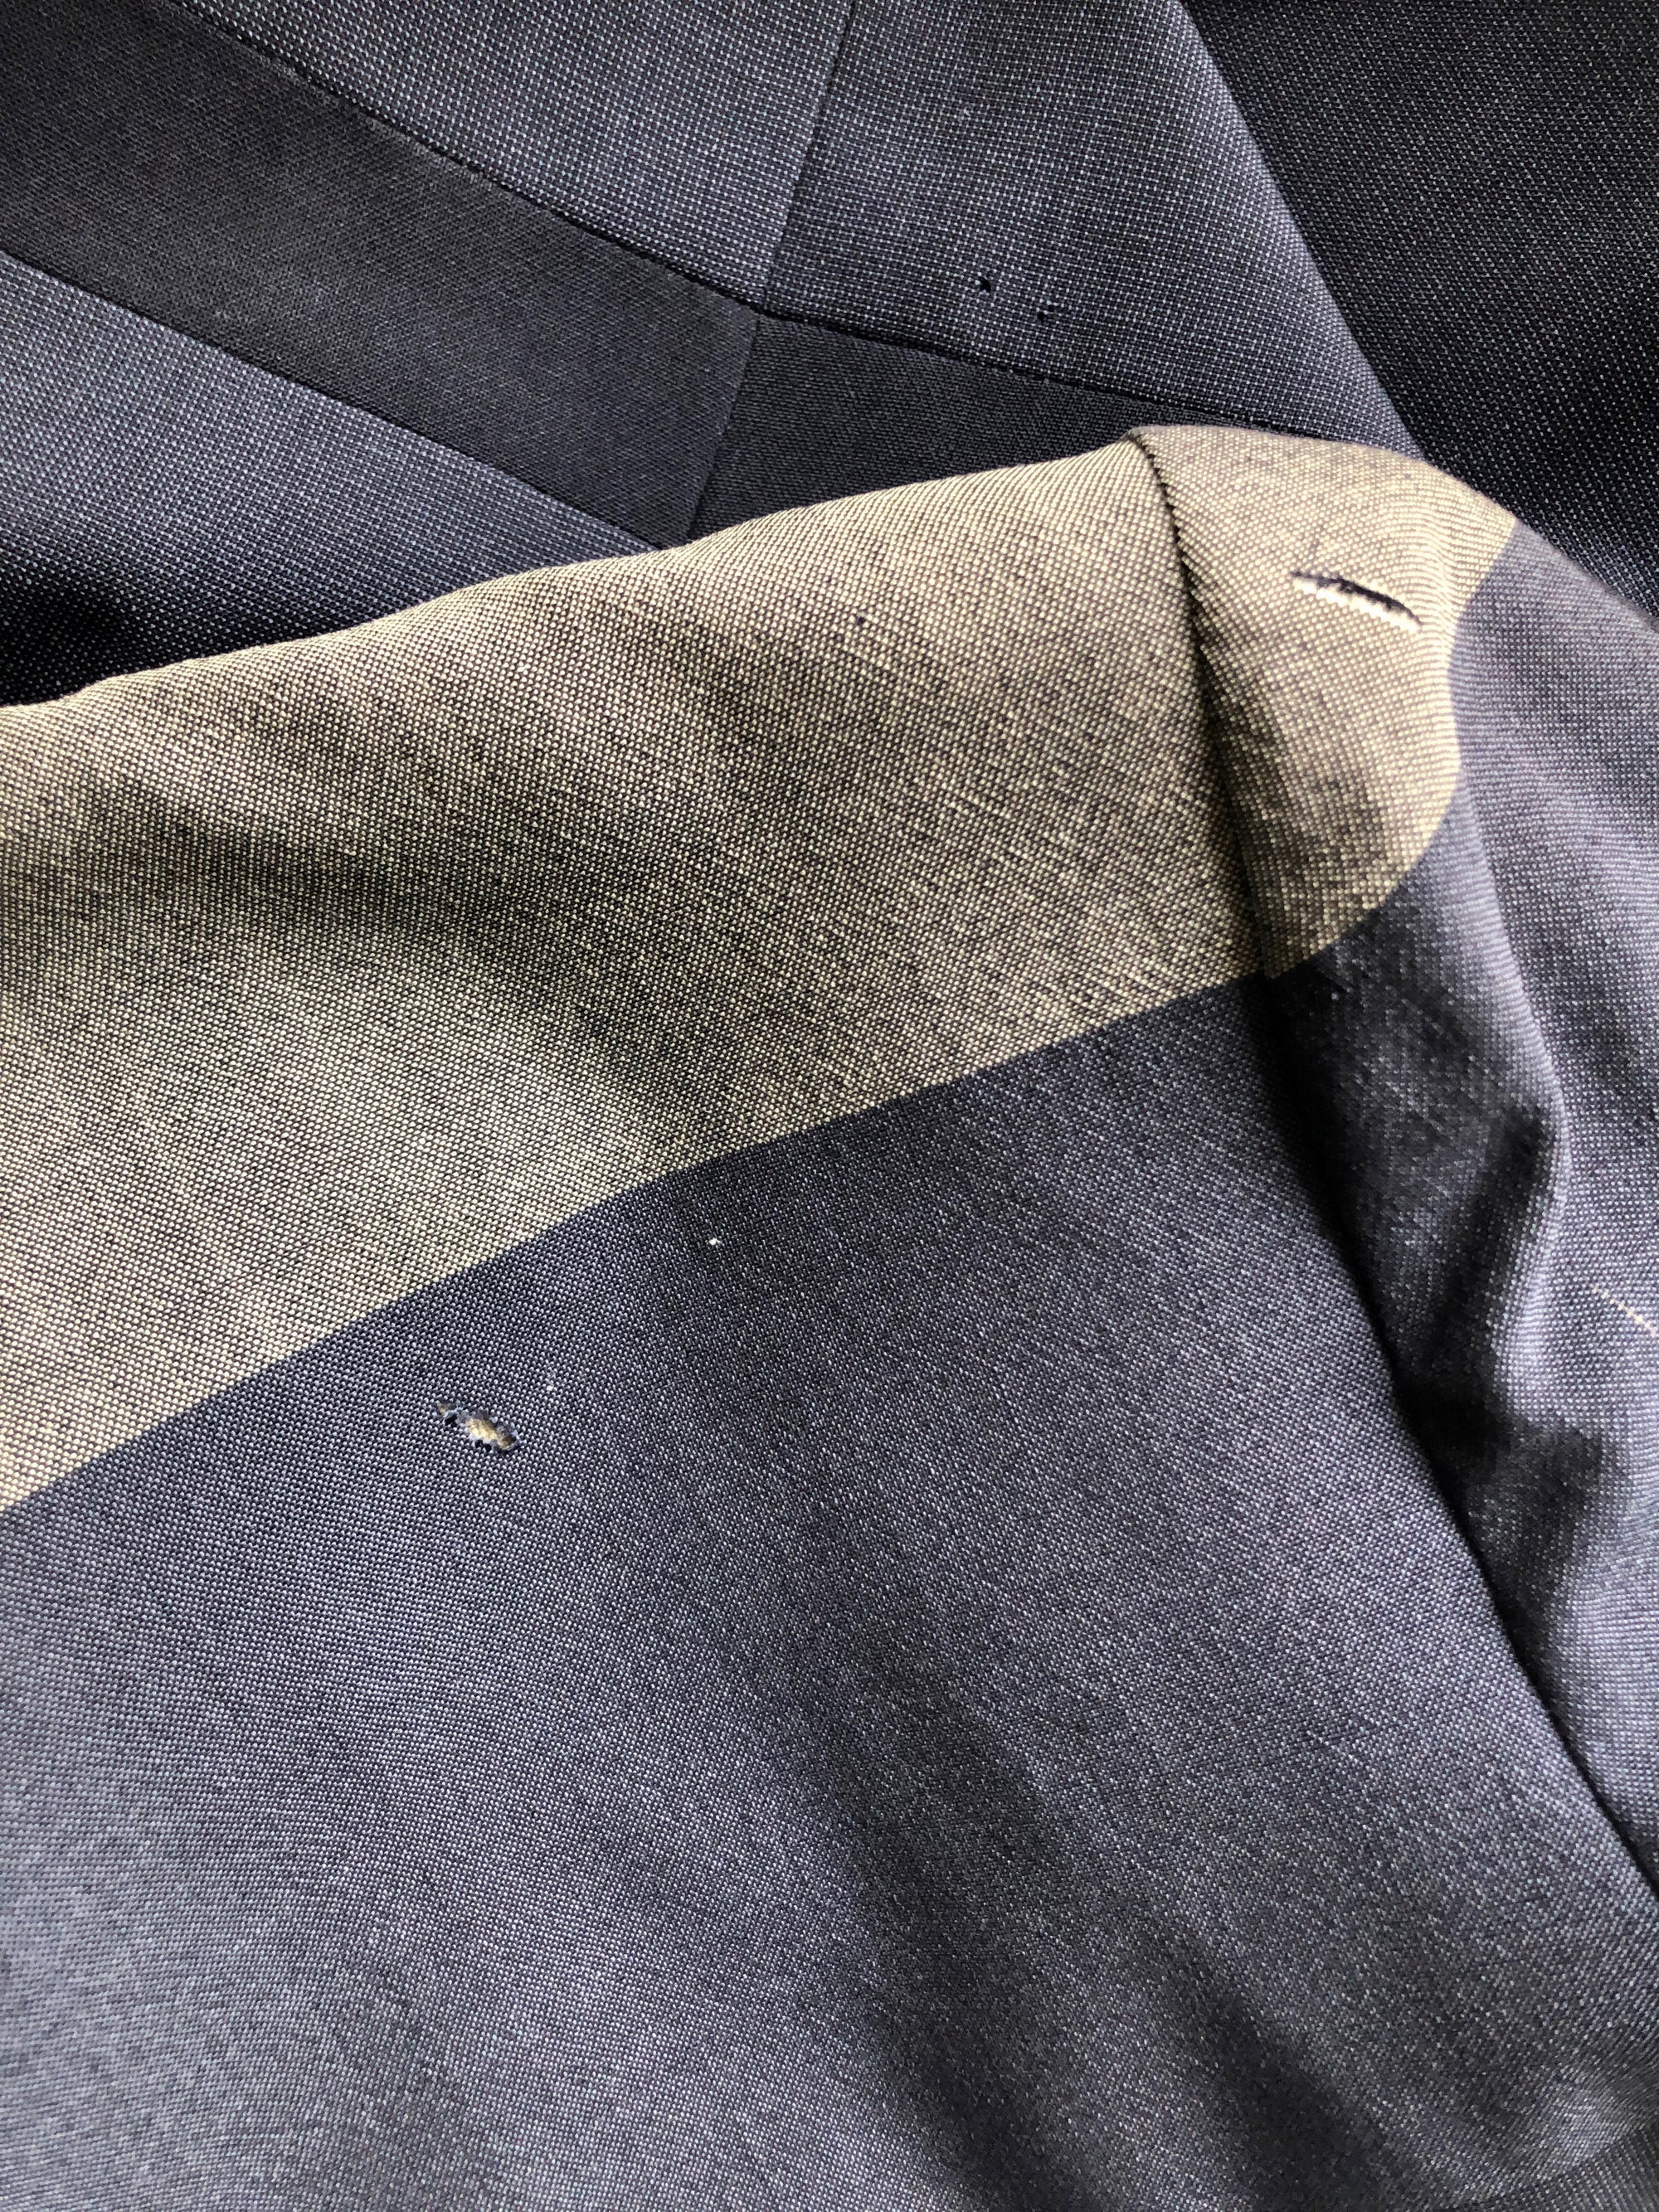 Rare Gilbert Adrian Suit | 1940s – DEAR GOLDEN